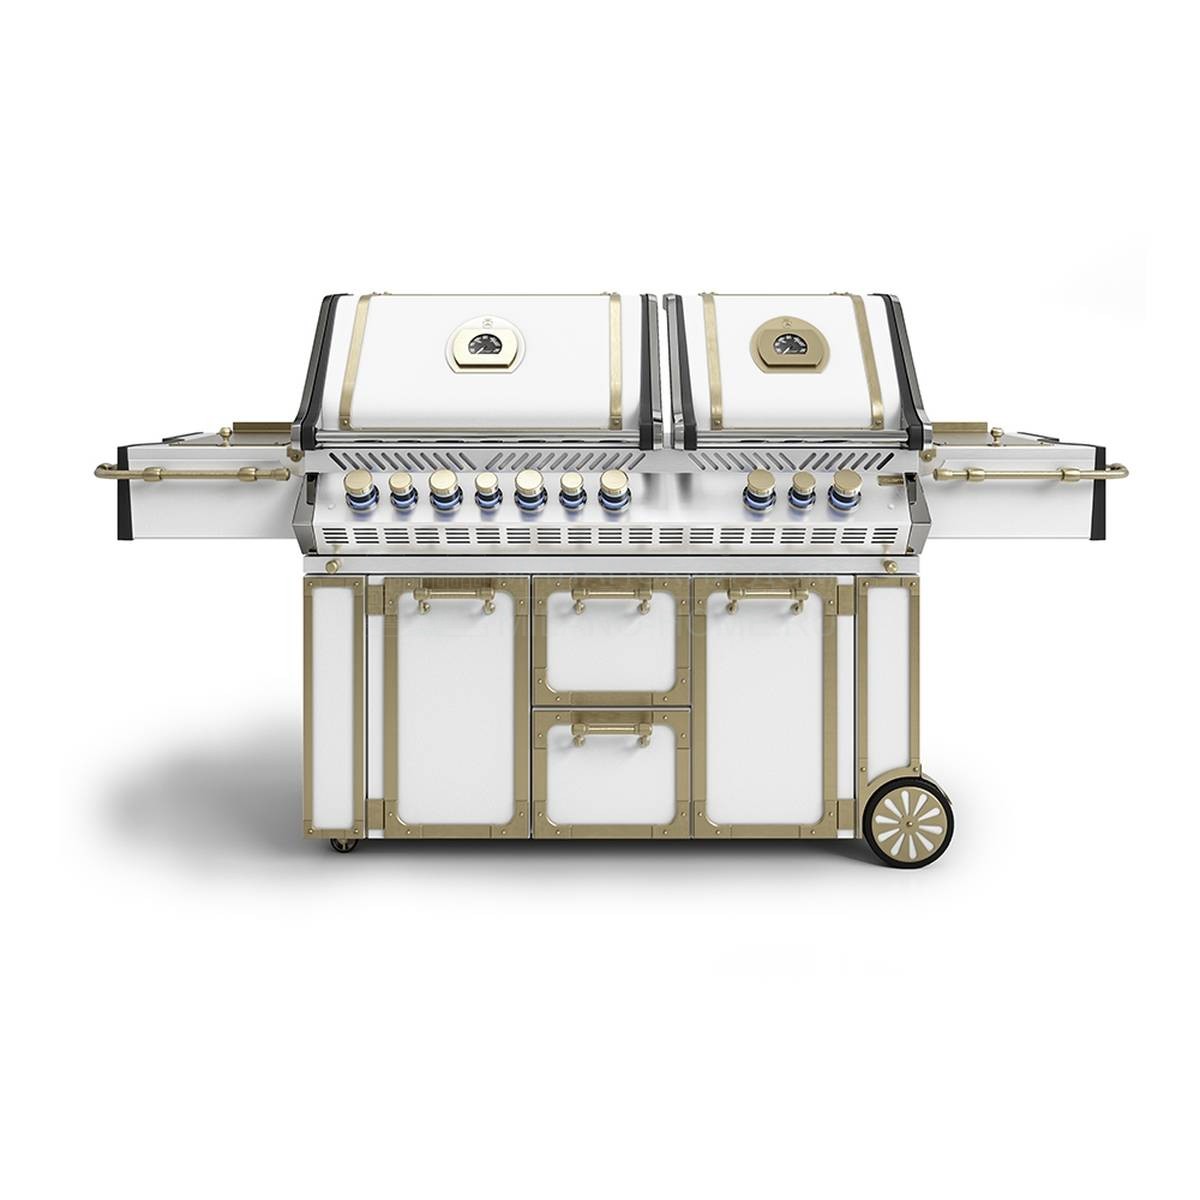 Барбекю Freestanding barbecue 140 из Италии фабрики OFFICINE GULLO